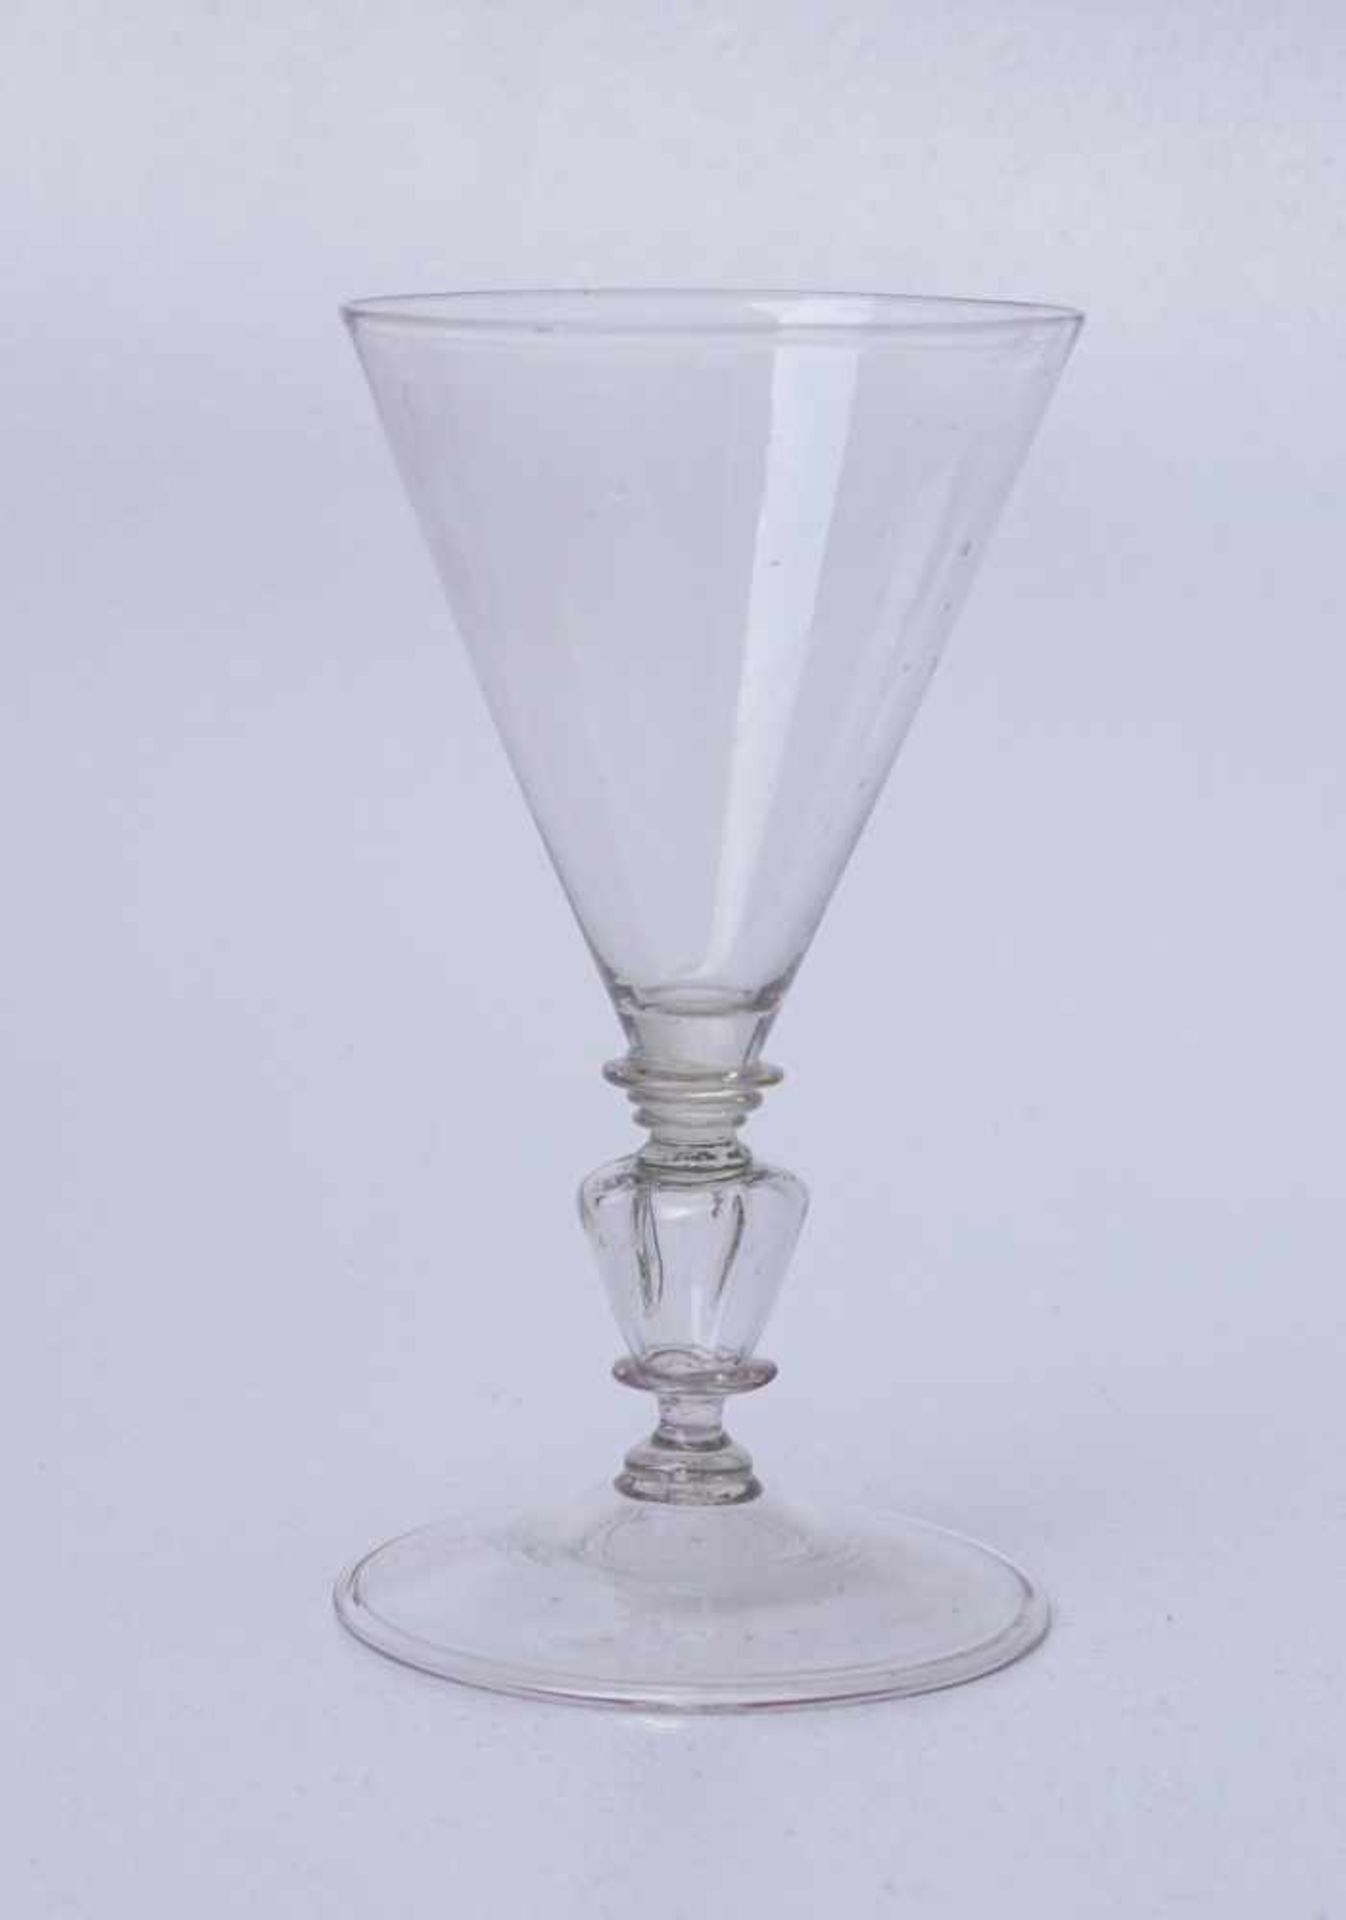 Seltenes Trichterglas des 17. Jhd.Farbloses Glas, geblasen, breiter Fuß mit Standring, Schaft